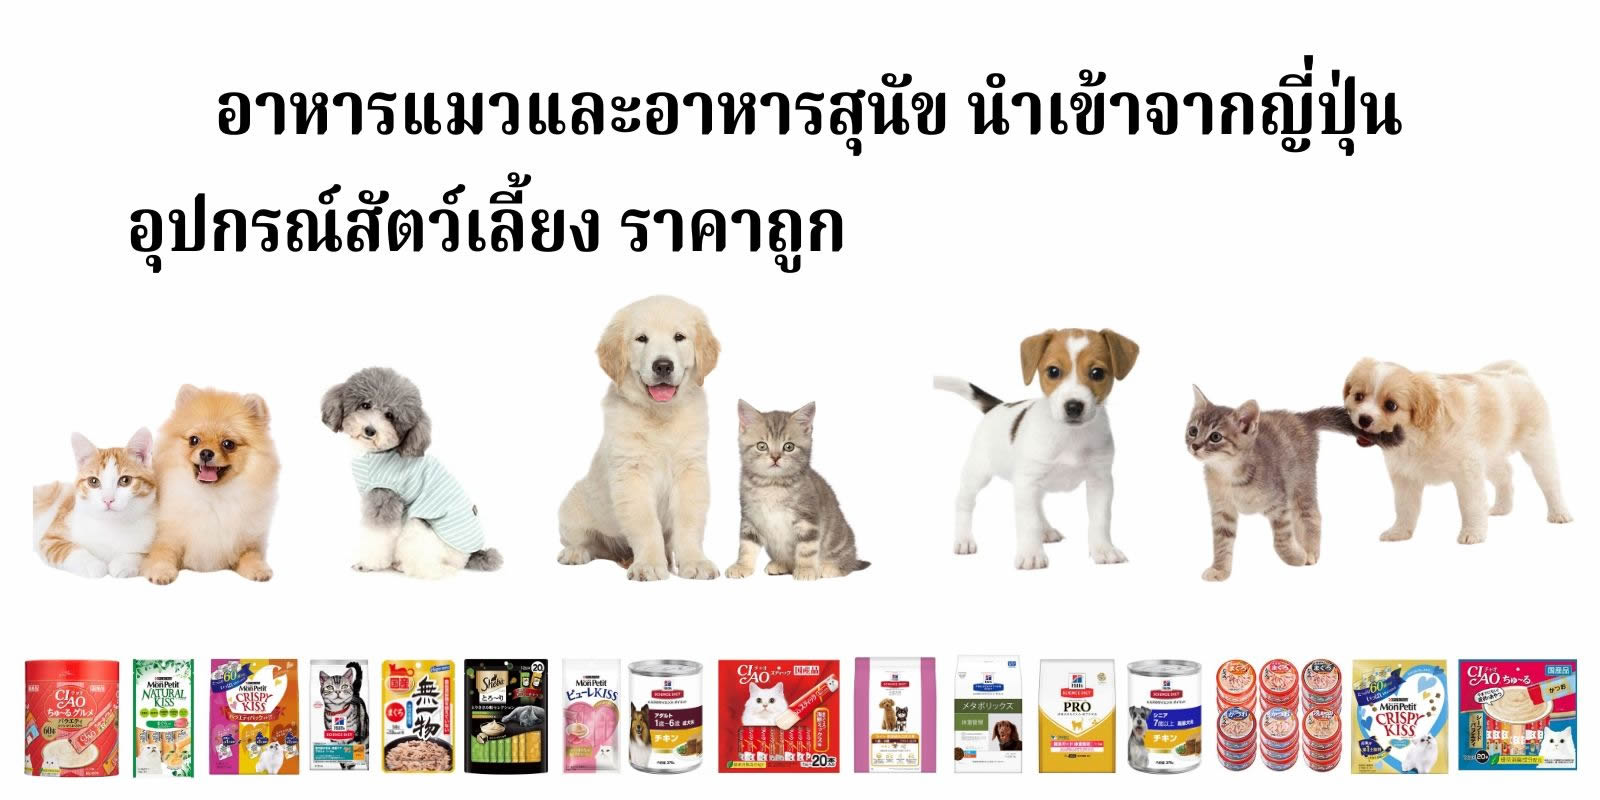 อาหารแมว อาหารสุนัข (อาหารหมา) นำเข้าจากญี่ปุ่น อุปกรณ์สัตว์เลี้ยง ราคาถูก